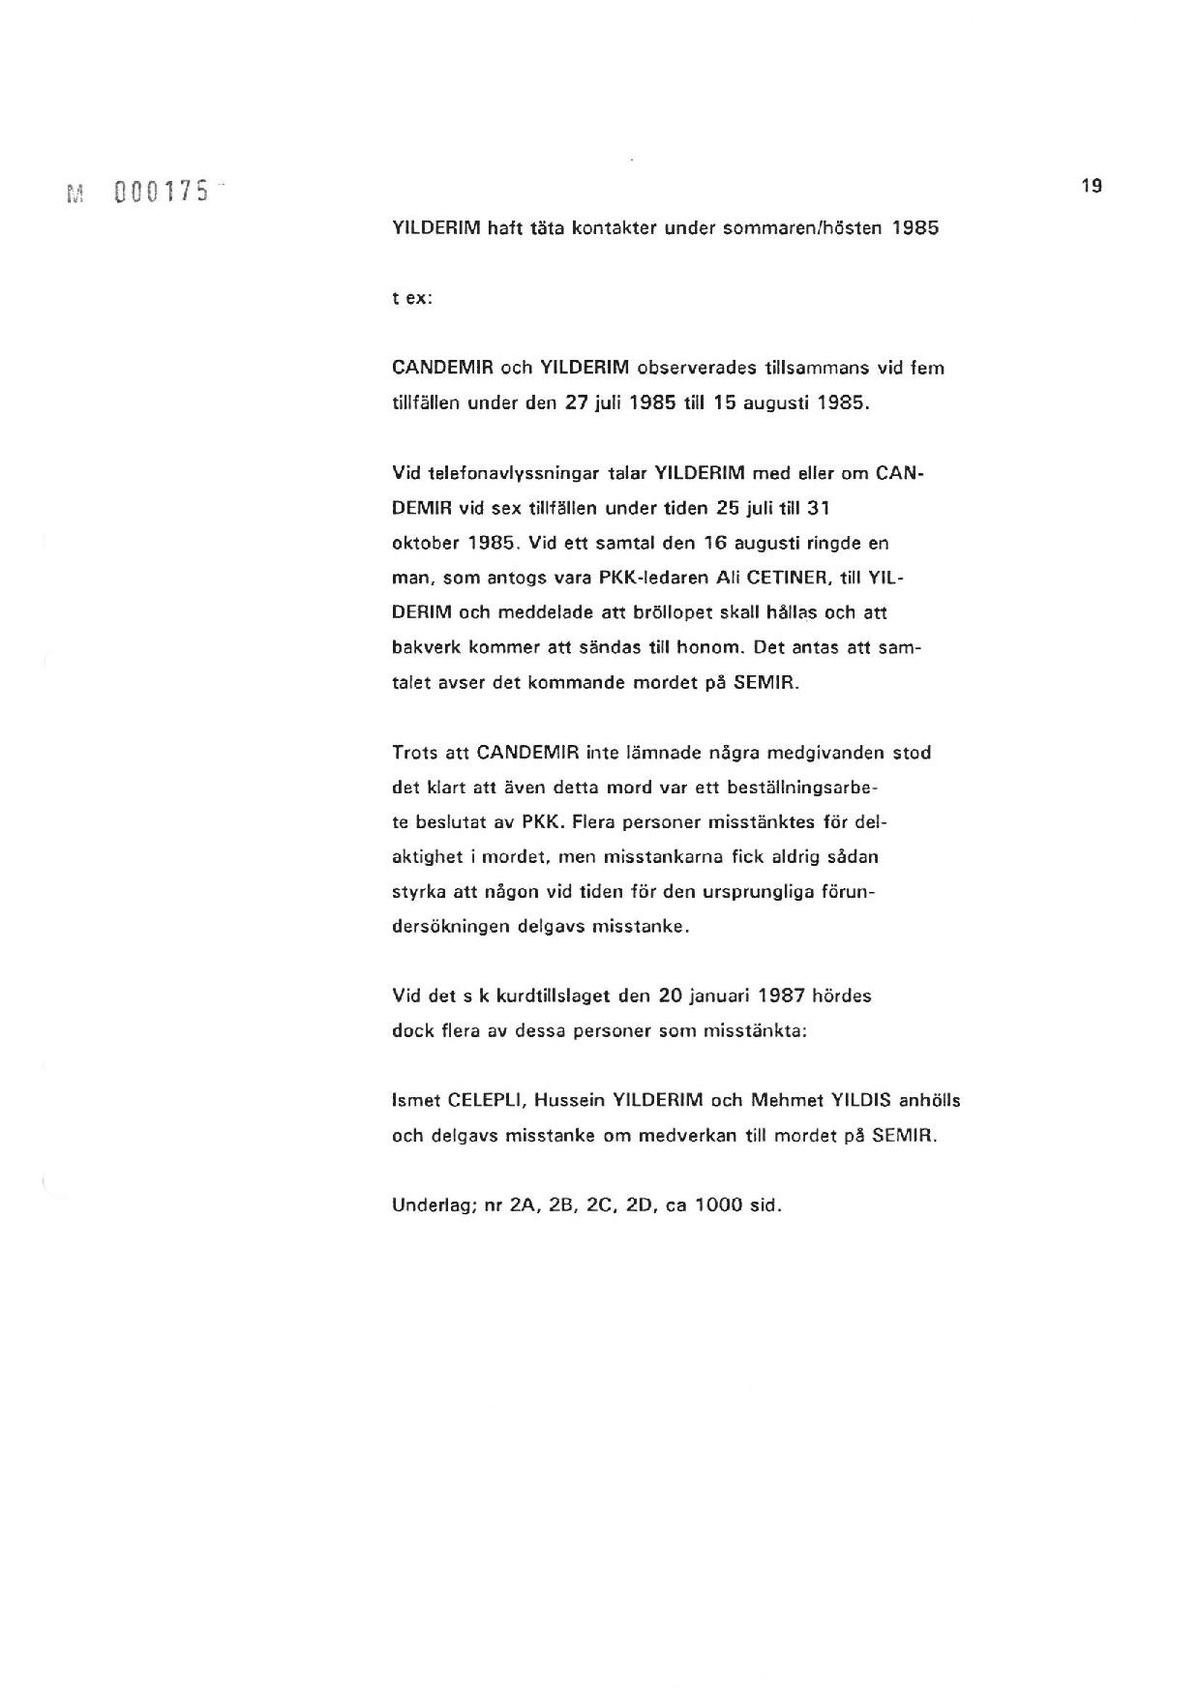 Pol-1993-09-03 YD15242-00 Rapport-PKK-spåret kammaråklagare Per-Erik Larsson.pdf